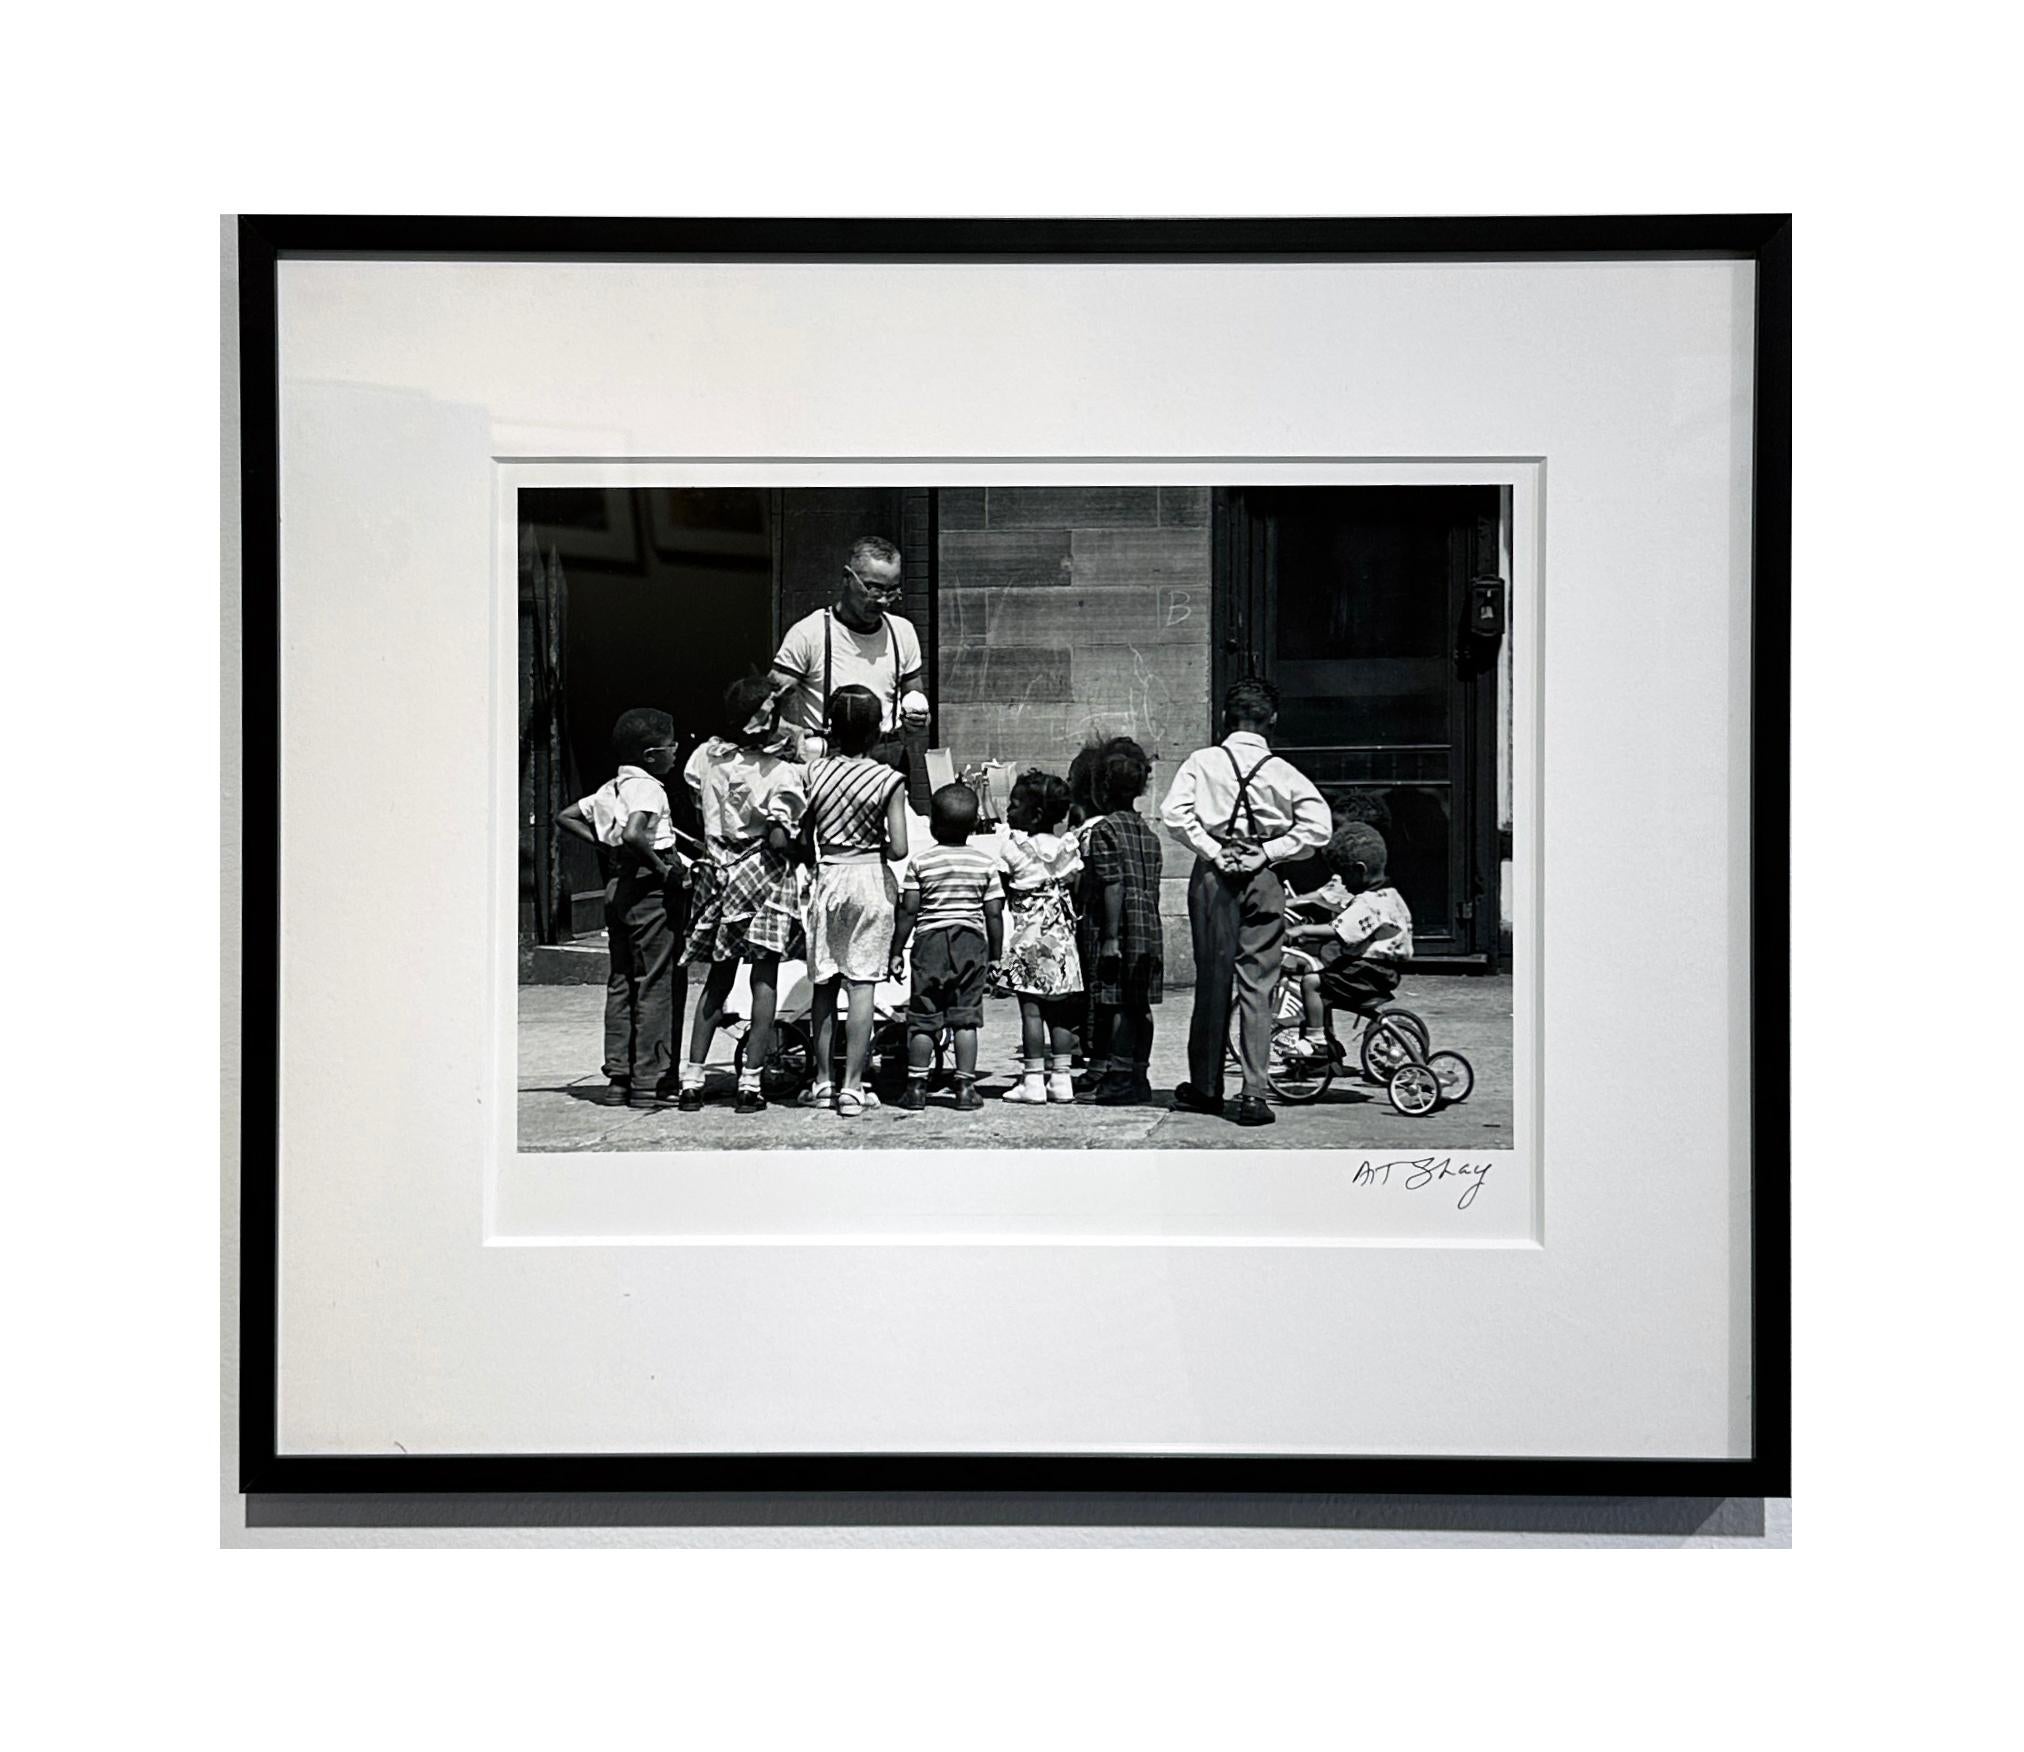 In diesem wunderbaren Beispiel für Art Shays meisterhafte Straßenfotografie versammeln sich Kinder mit geballter Aufmerksamkeit um den Eisverkäufer.  CIRCA 1949, dieses Foto fängt die Unschuld vergangener Tage ein.  Es ist mattiert und gerahmt in